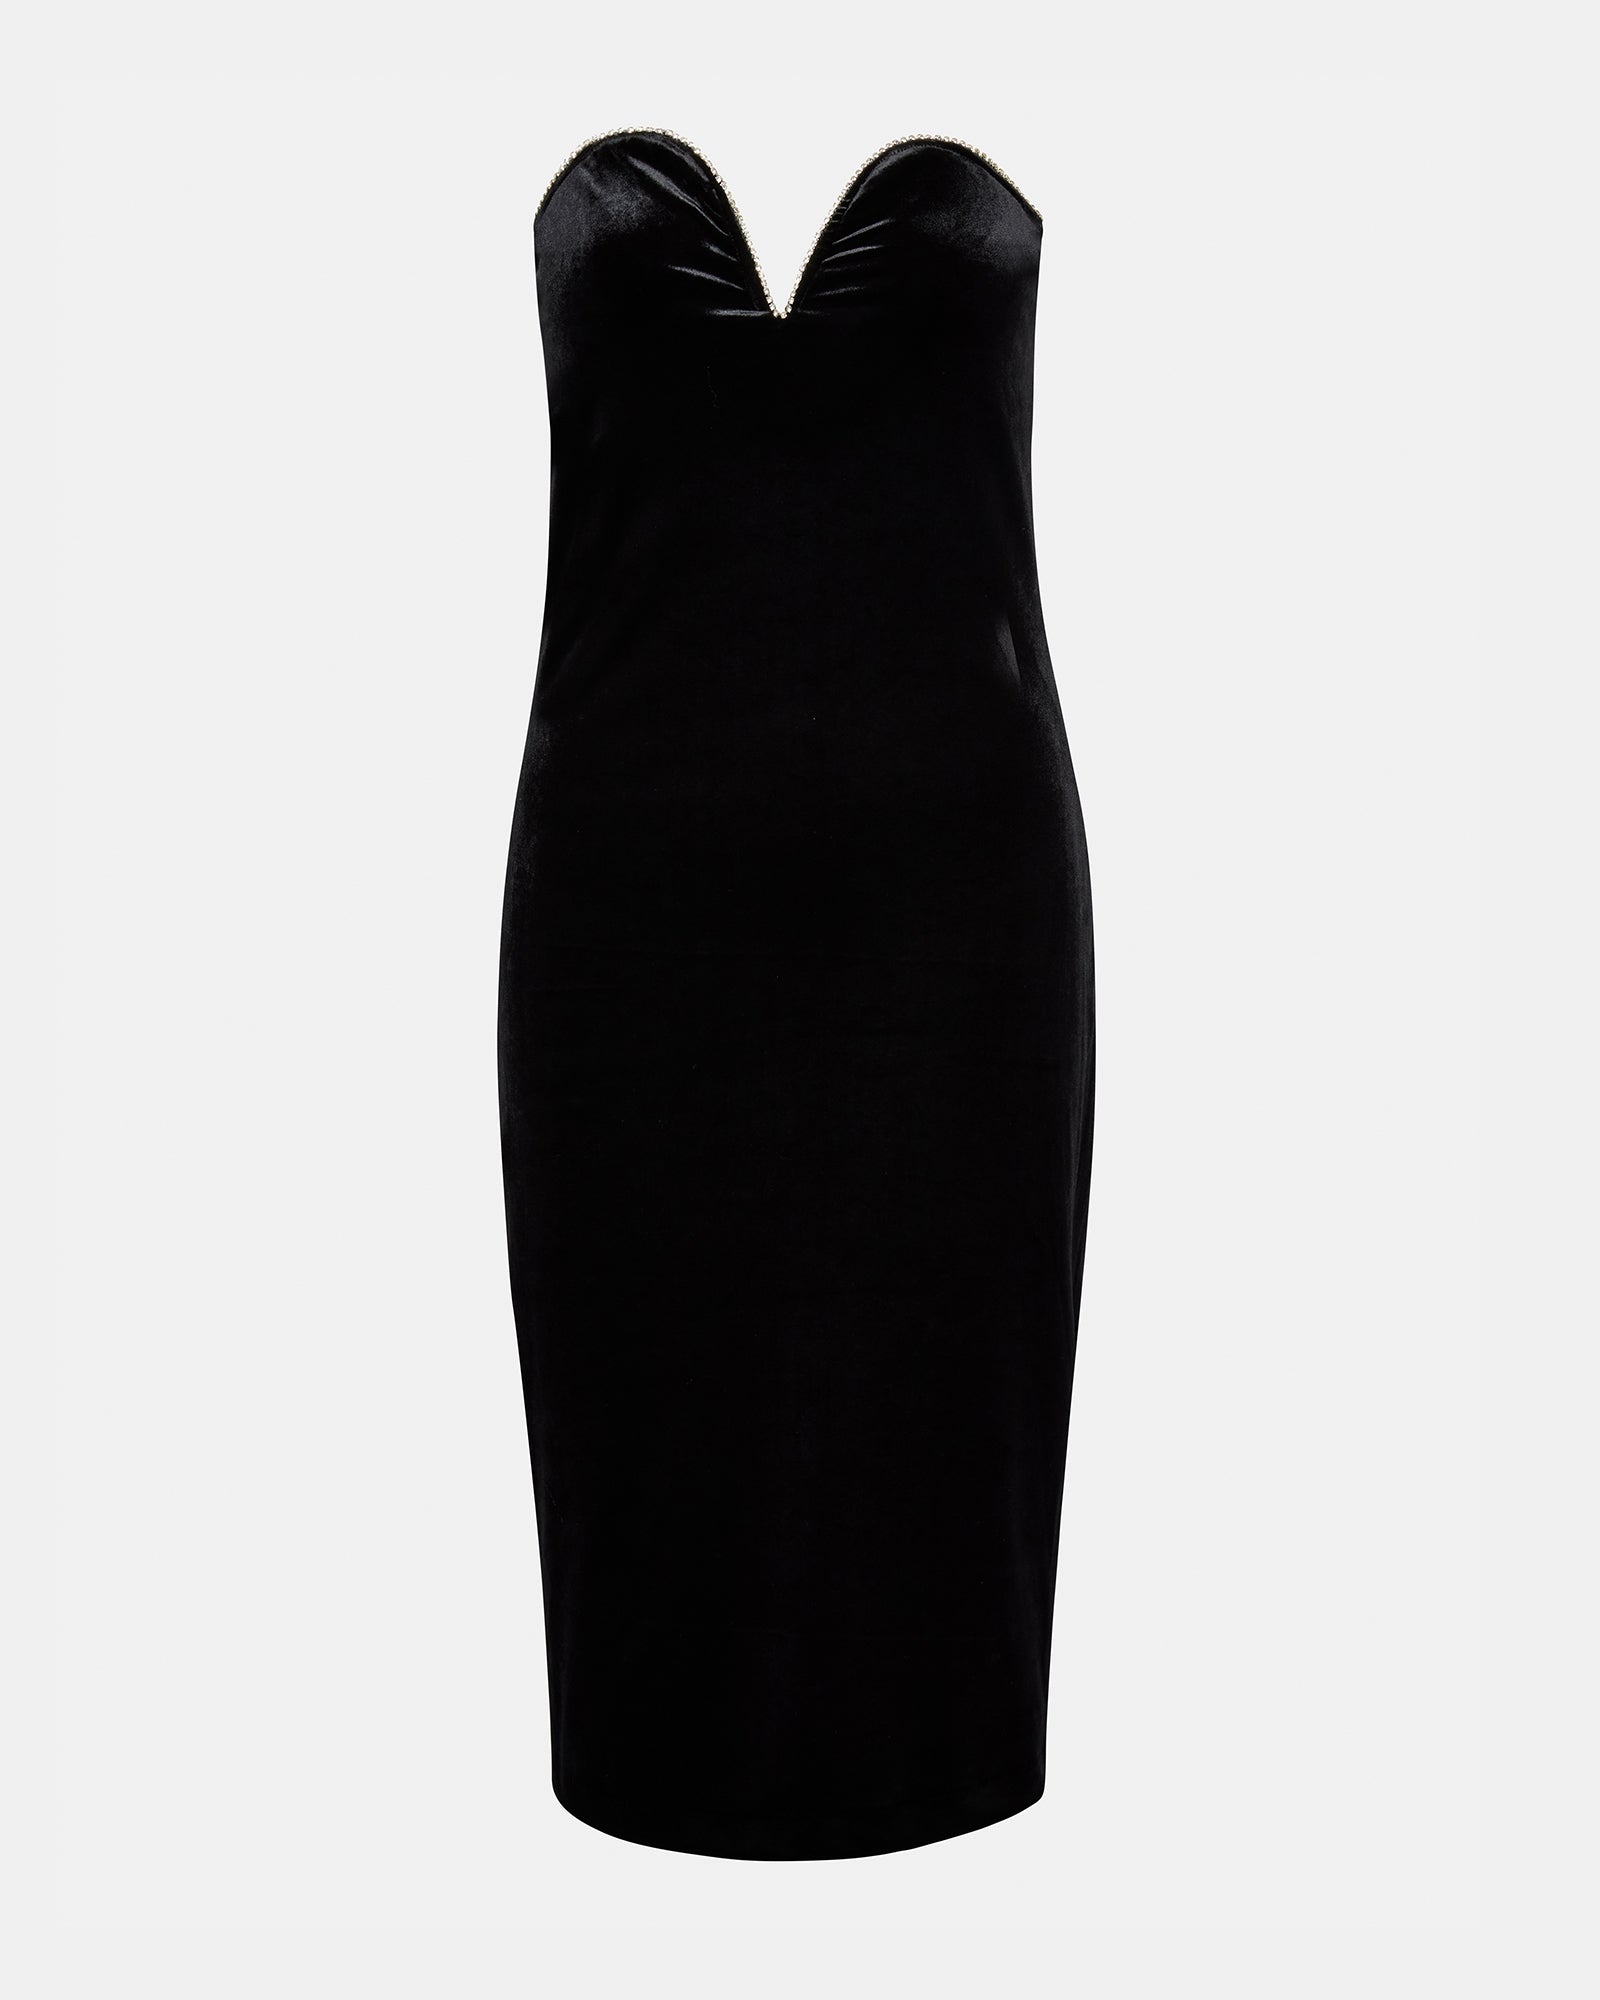 CHARLENE Dress Black | Women's Velvet Midi Dress – Steve Madden